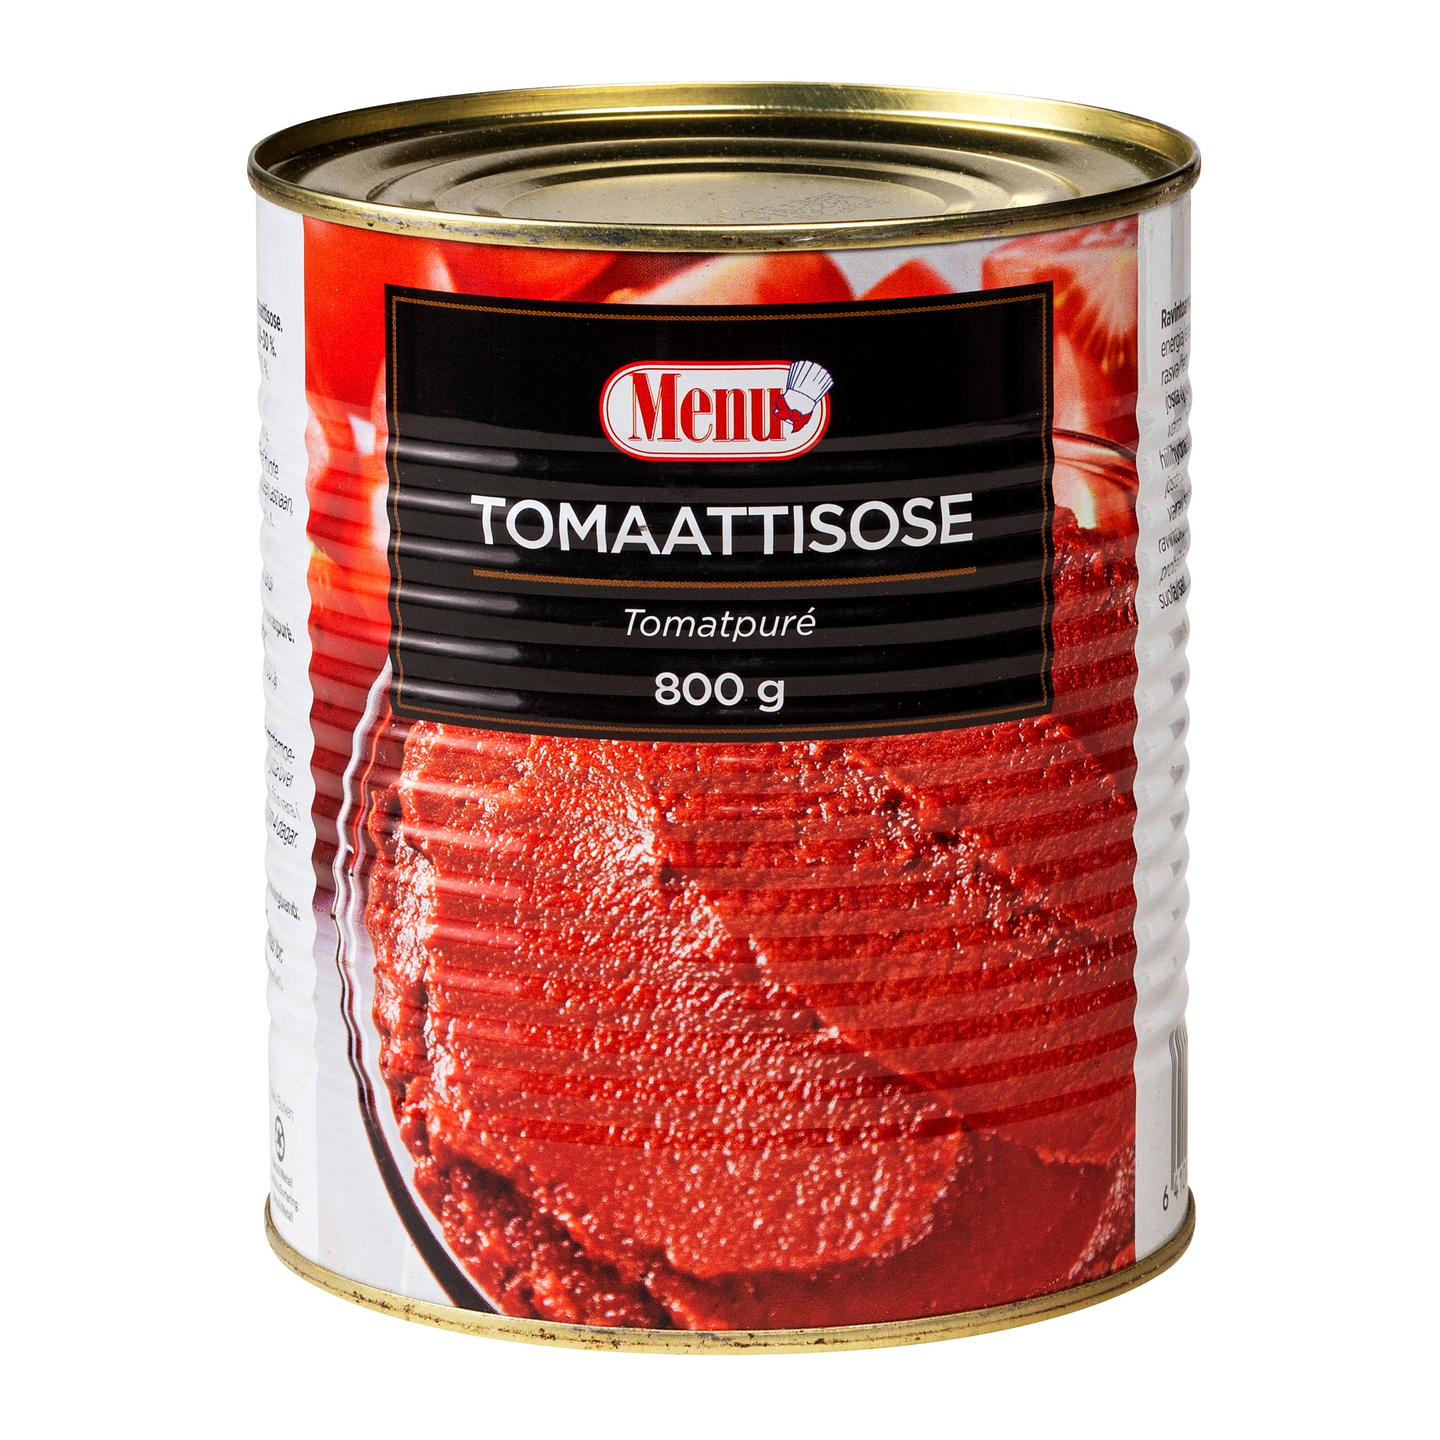 Menu tomaattisose 800g